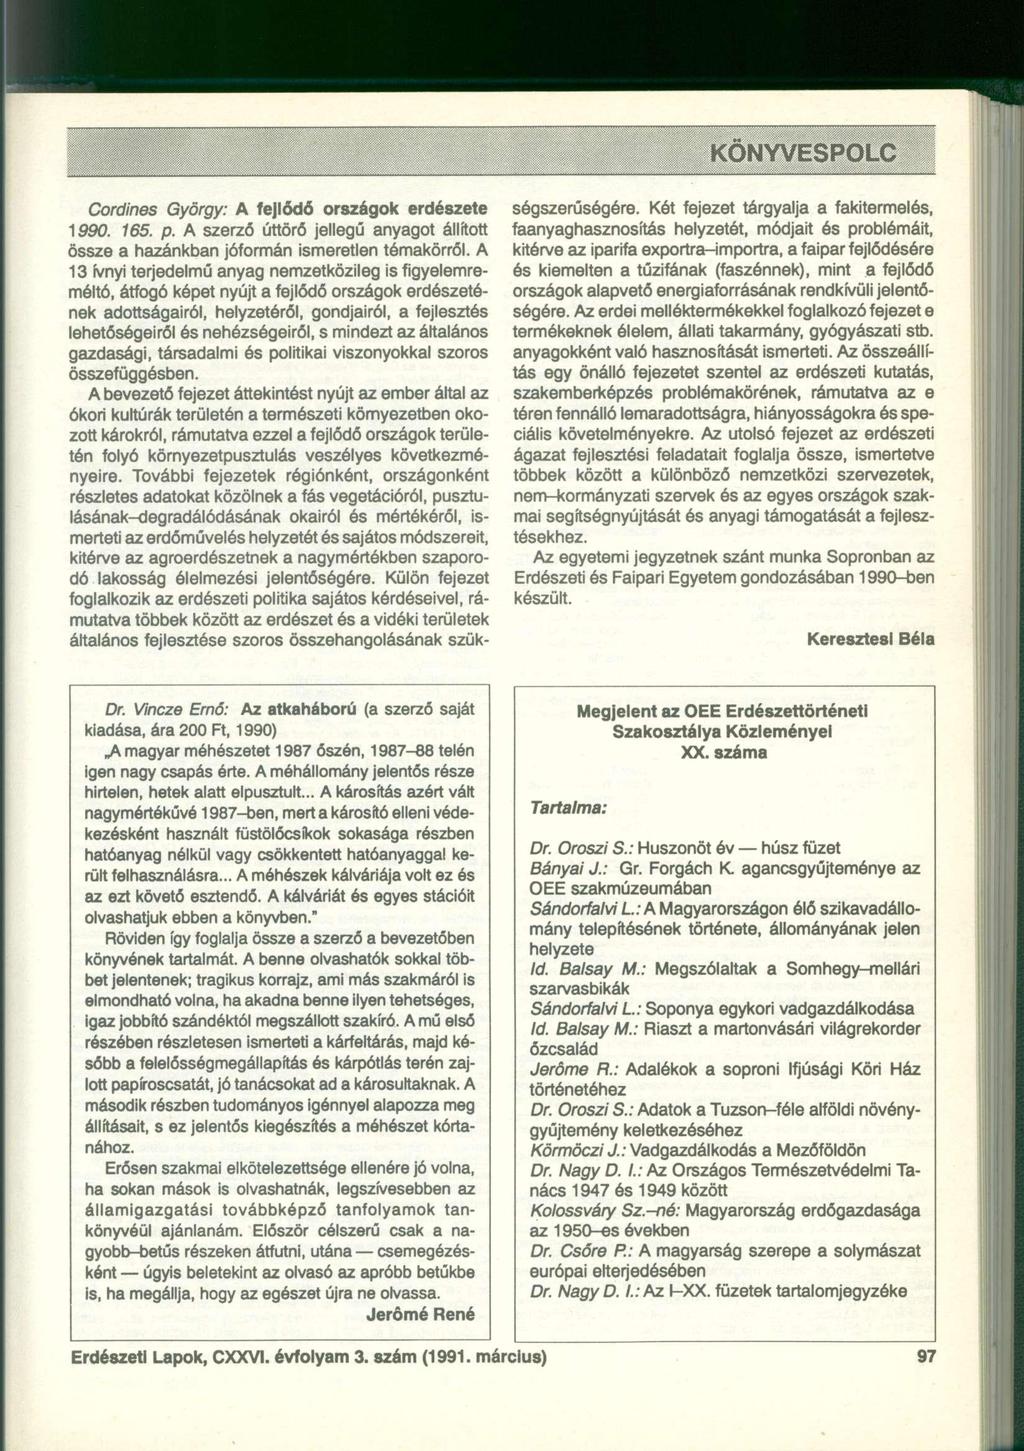 Cordines György: A fejlődő országok erdészete 1990. 165. p. A szerző úttörő jellegű anyagot állított össze a hazánkban jóformán ismeretlen témakörről.